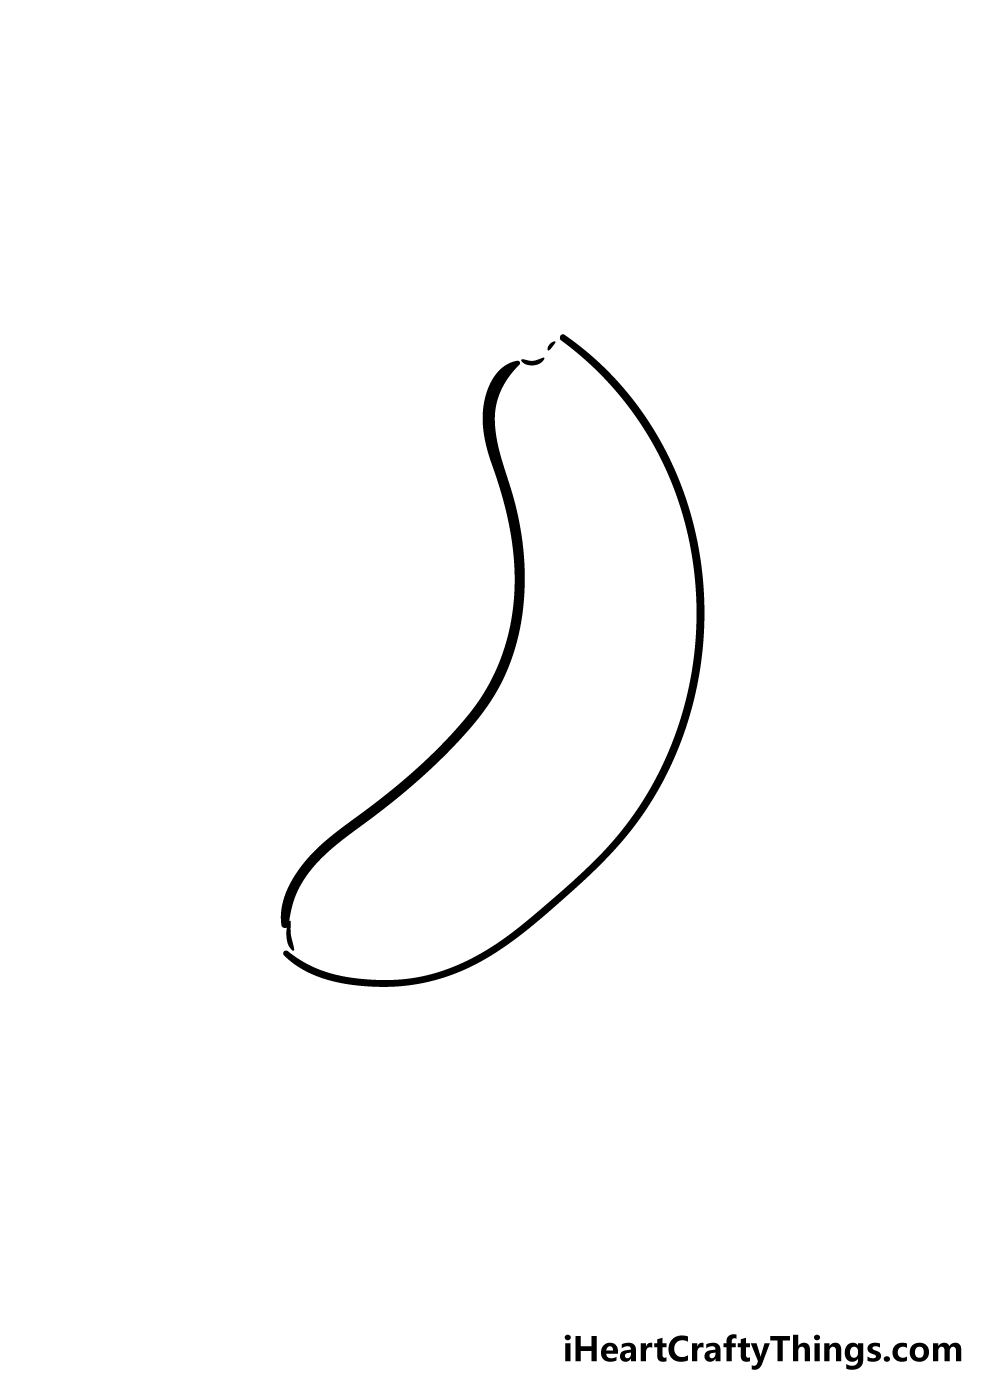 banana drawing step 2